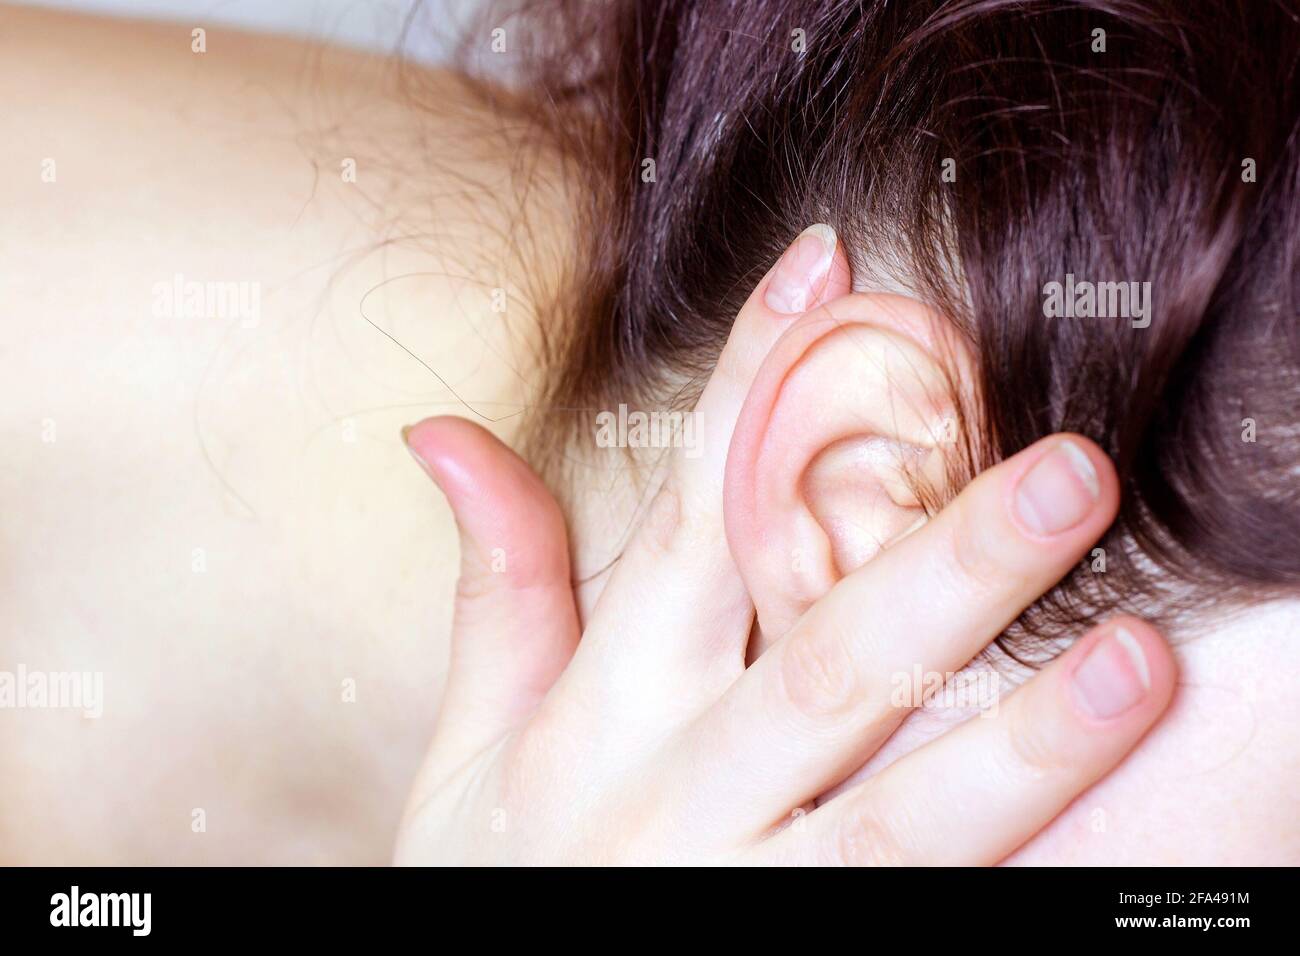 Dettaglio della testa con i capelli e l'orecchio al primo piano dell'esame medico. Foto Stock